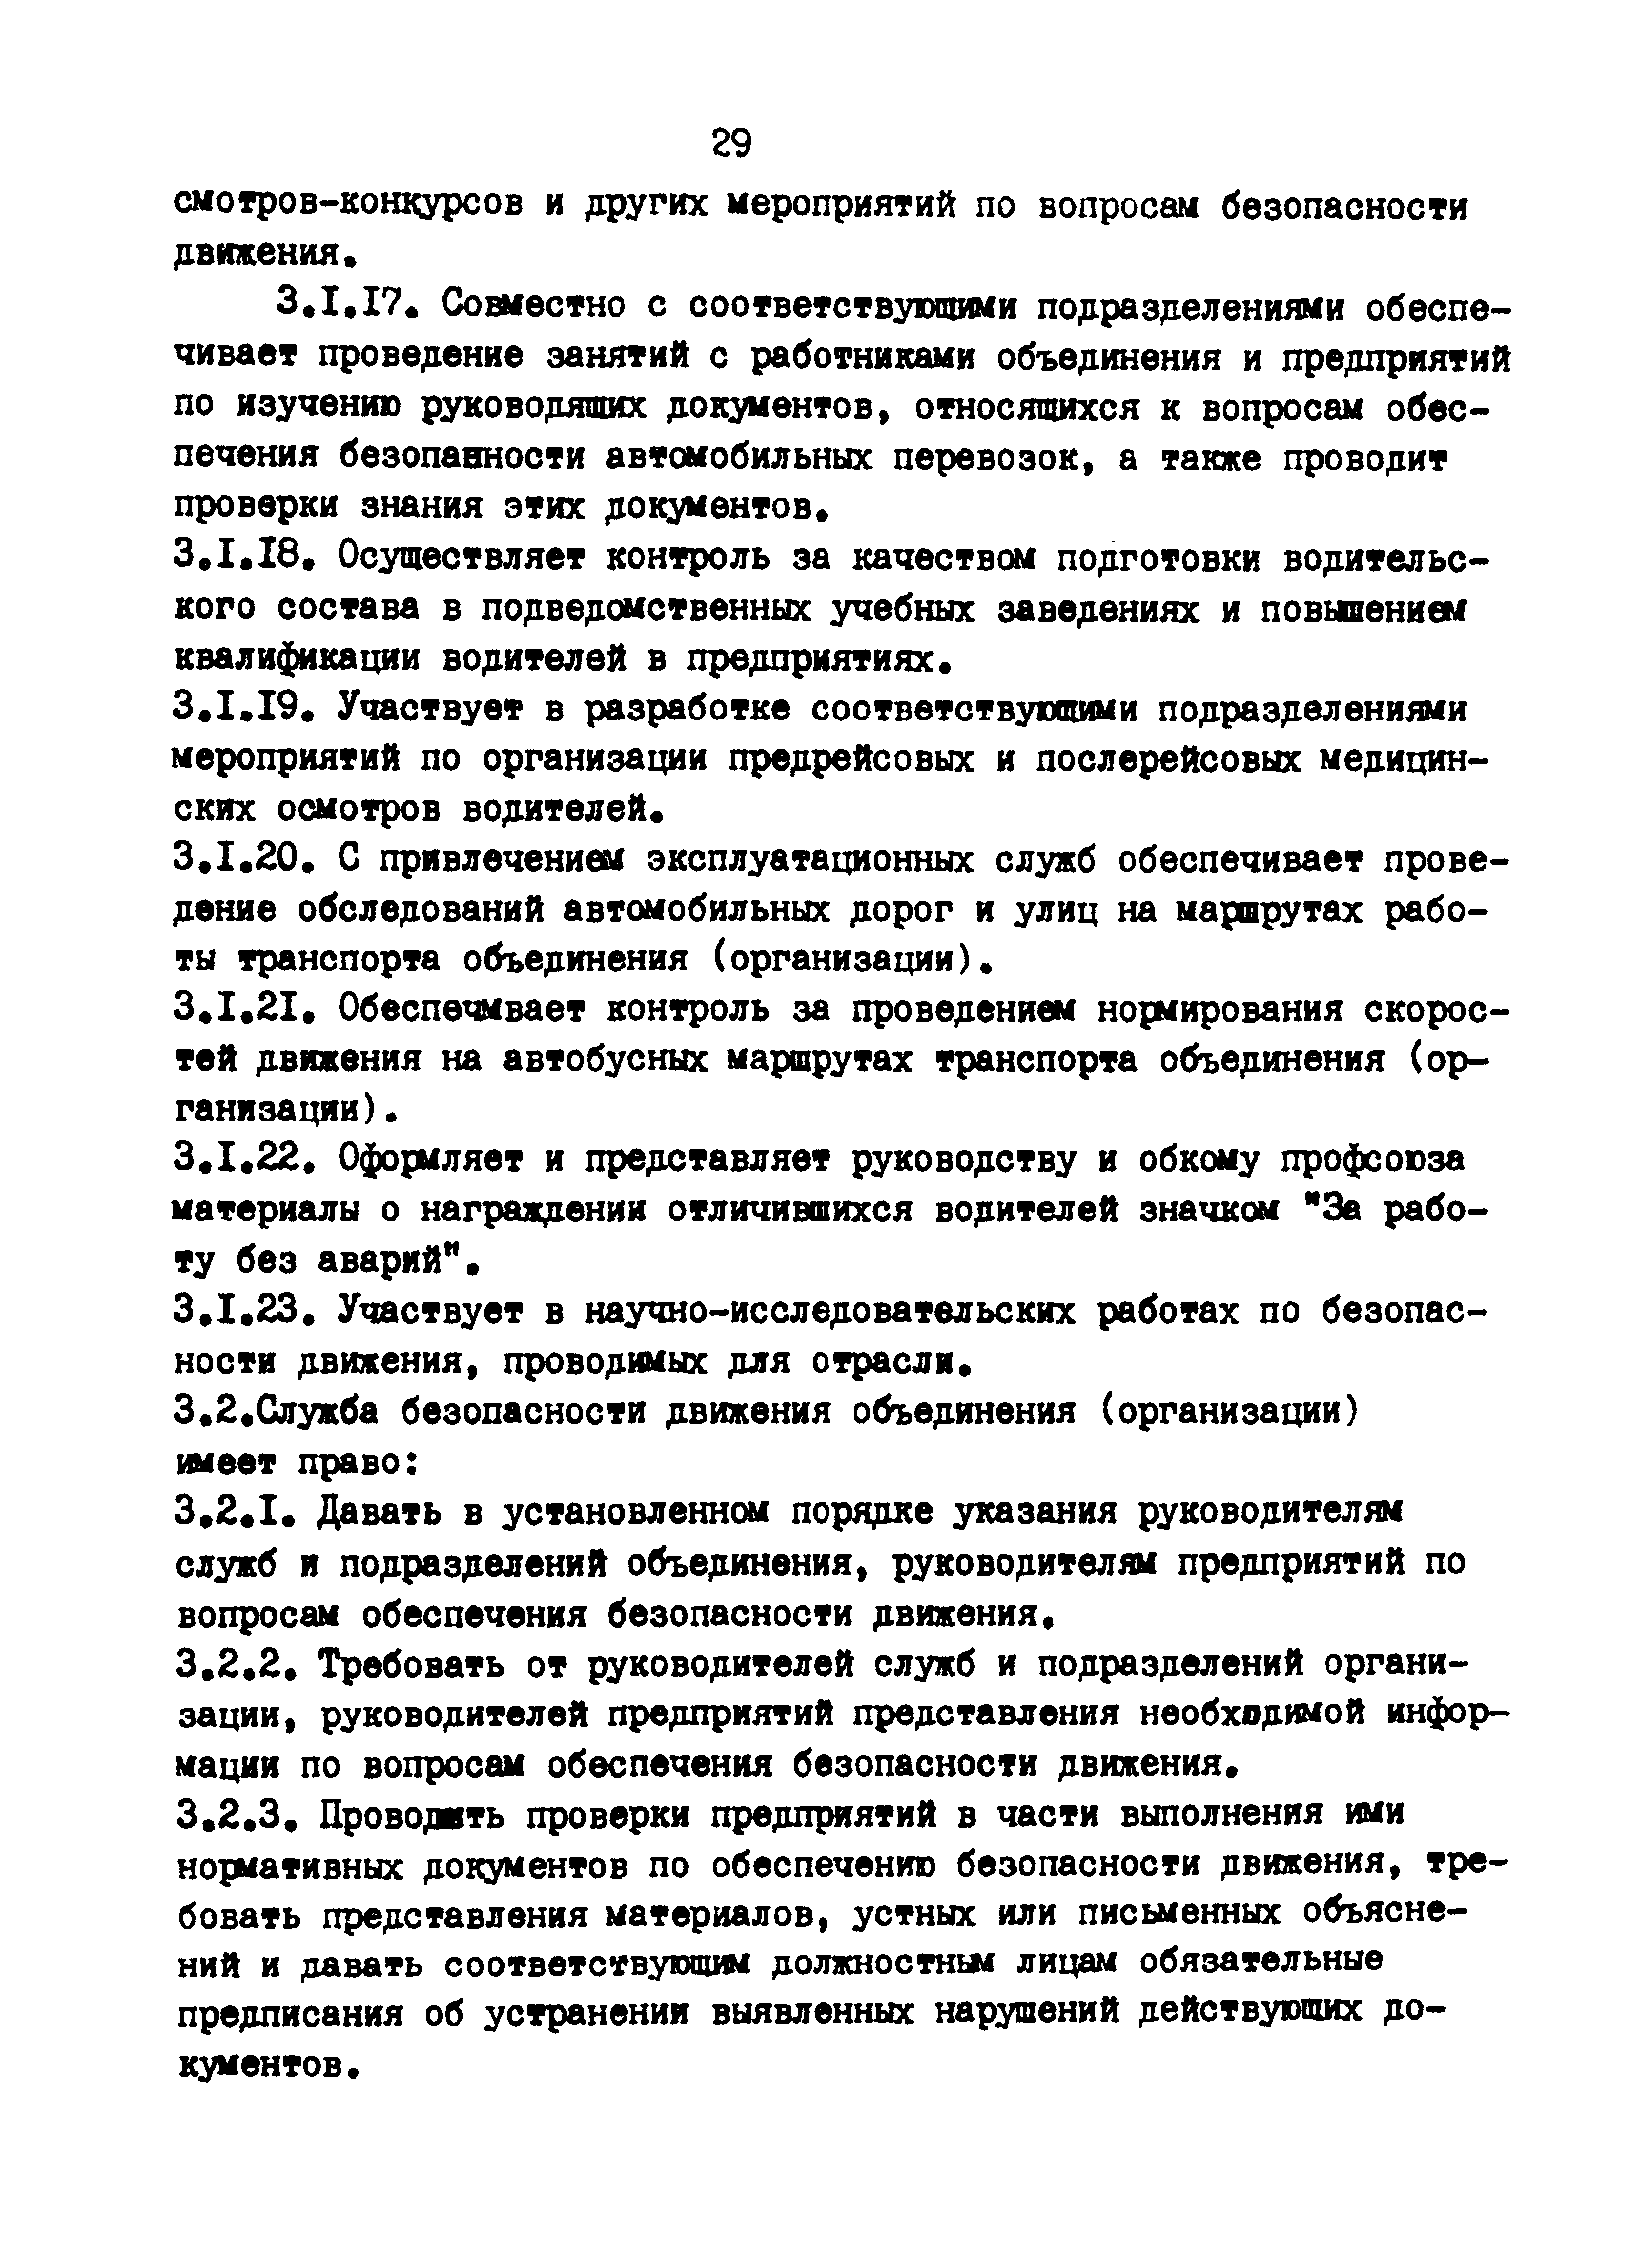 РД 200-РСФСР-12-0071-86-03